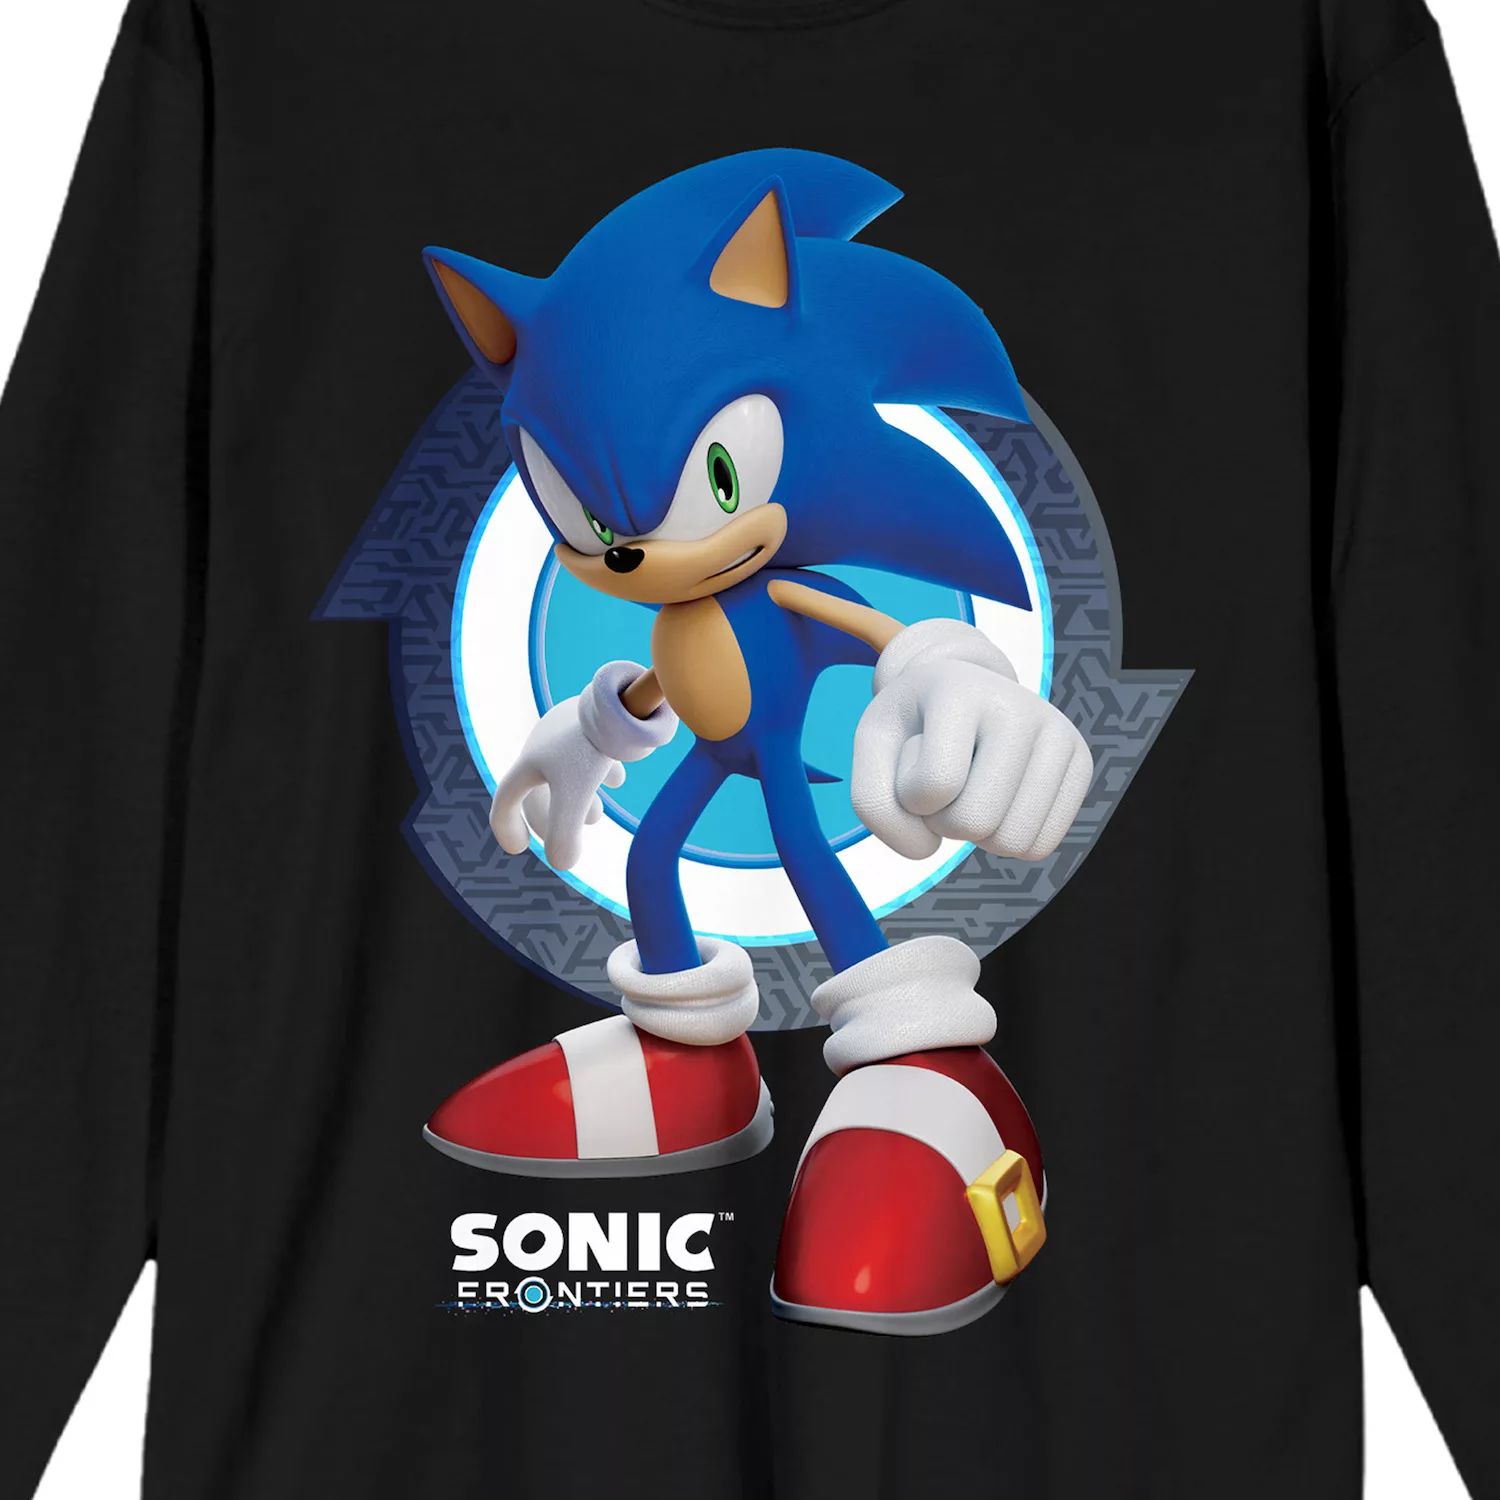 Мужская футболка с графикой Nintendo Sonic Frontiers Sonic Licensed Character xbox игра sega sonic frontiers